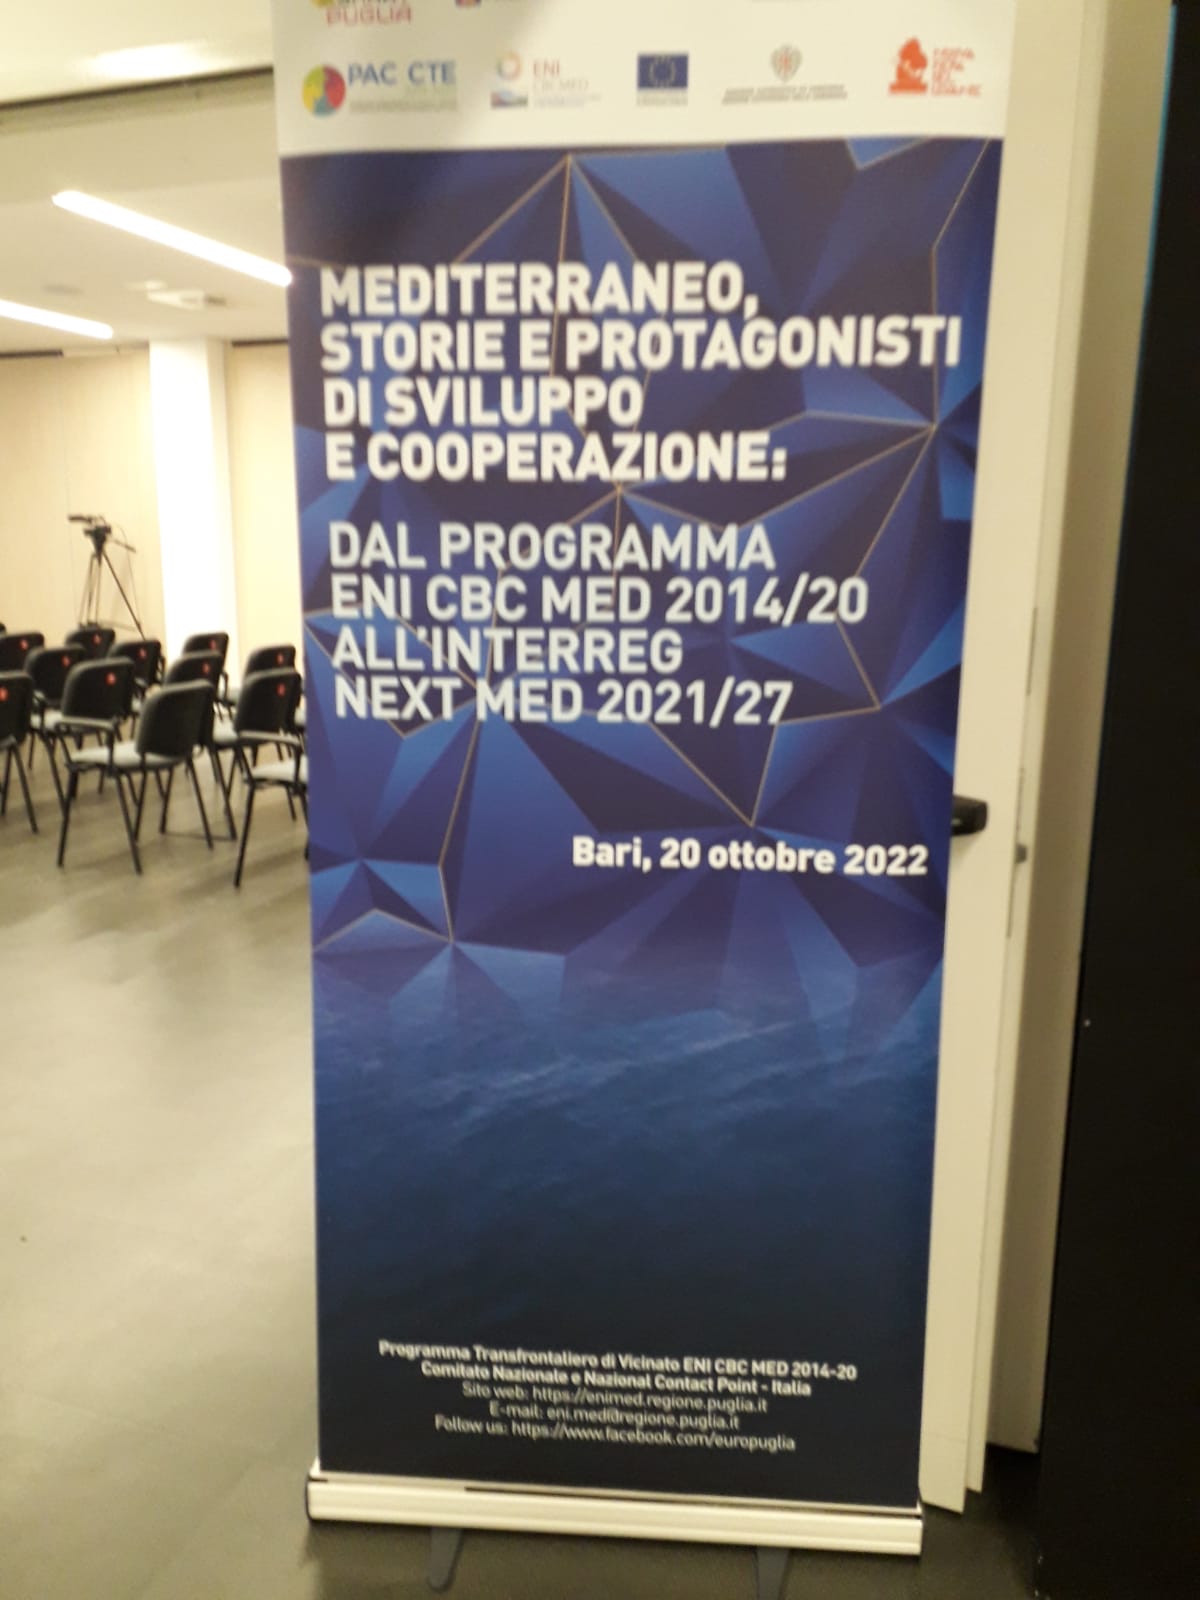 Galleria Bari, 20 ottobre 2022 – Evento “Mediterraneo, storie e protagonisti di sviluppo e cooperazione: dal Programma ENI CBC MED 2014/20 all’Interreg NEXT MED 2021/27” - Diapositiva 11 di 11